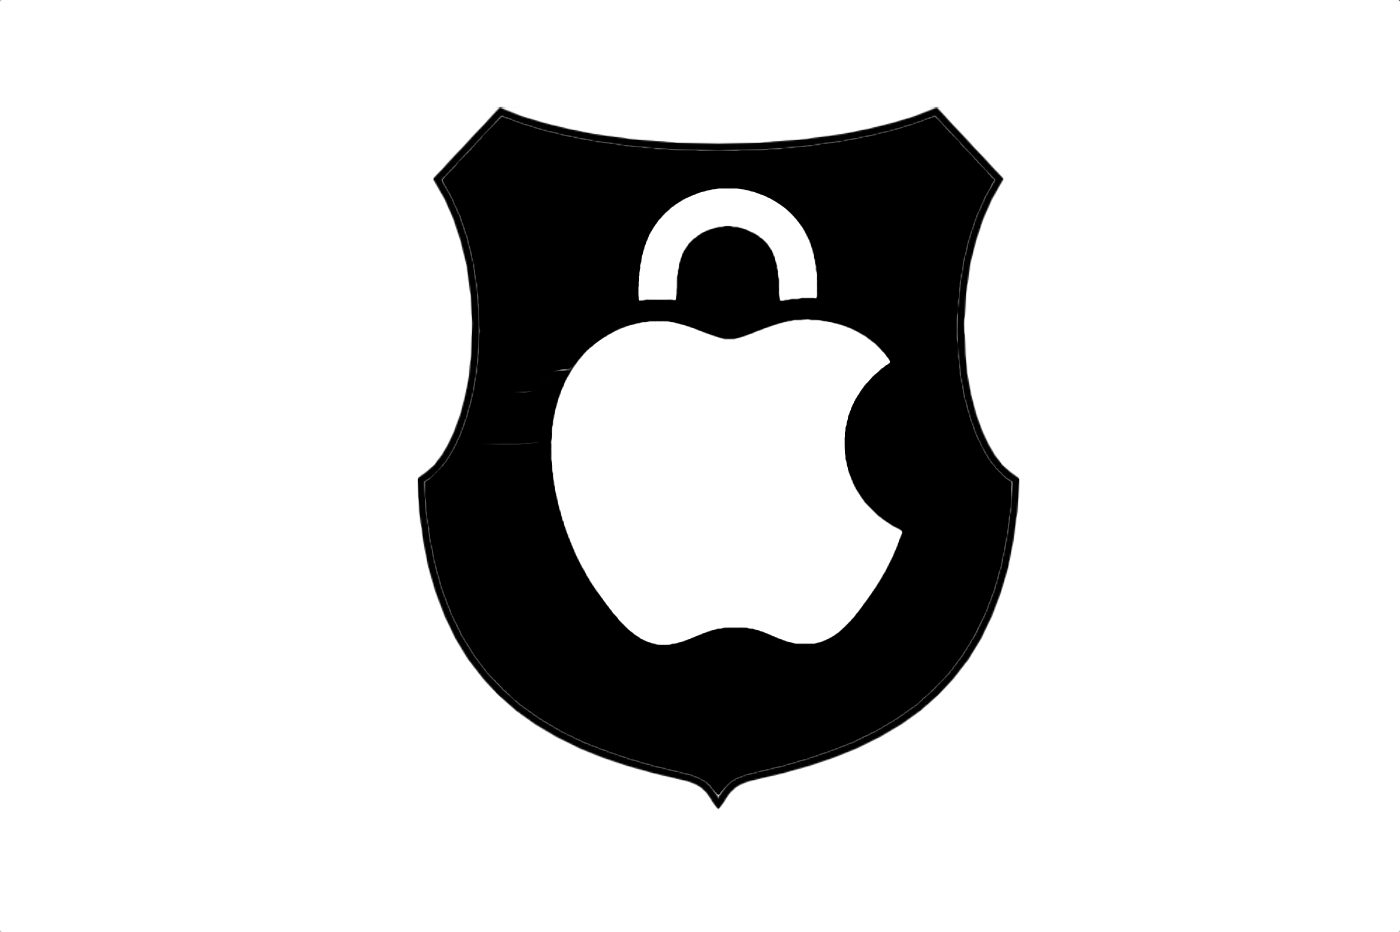 Apple ne veut pas de balance sur l'App Store